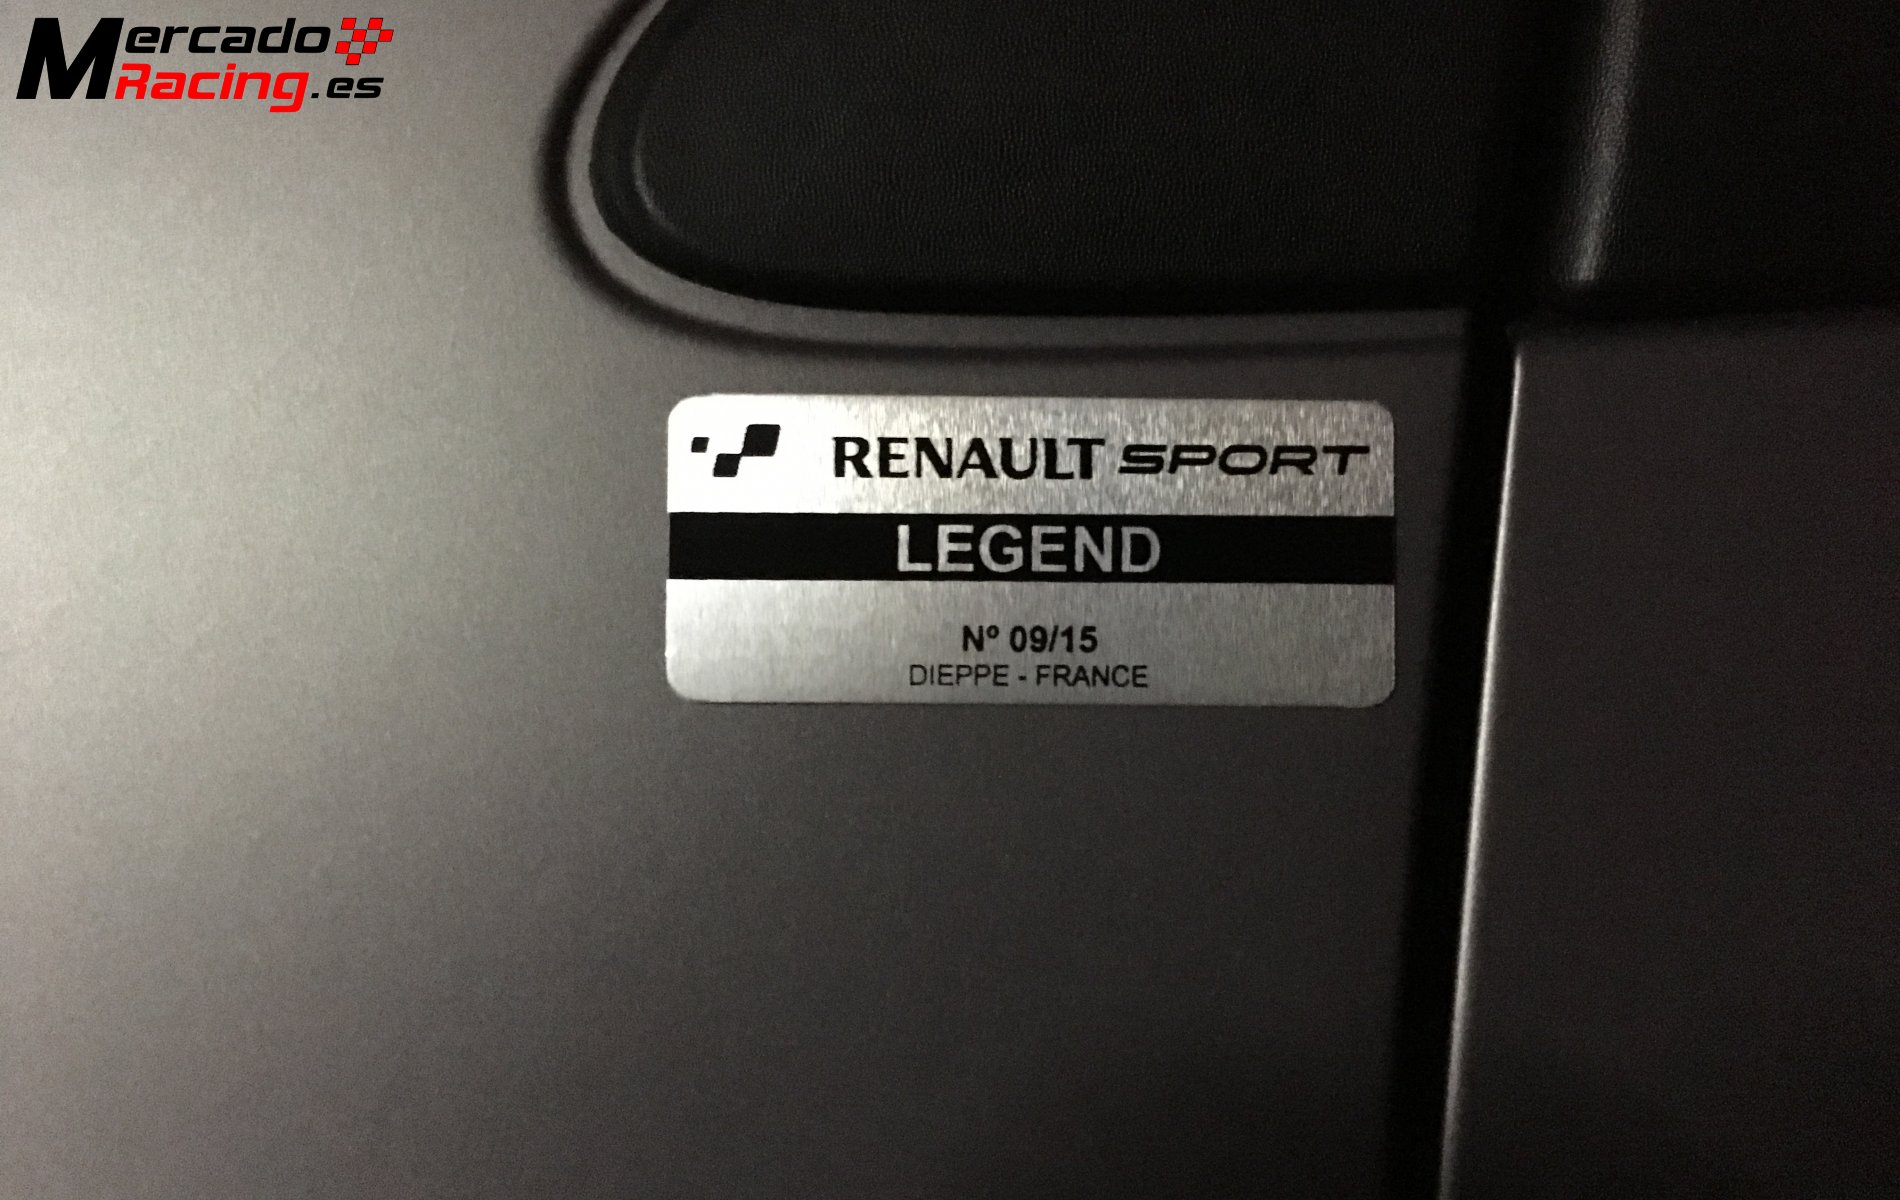 Renault clio rs 203 legend, 18.500